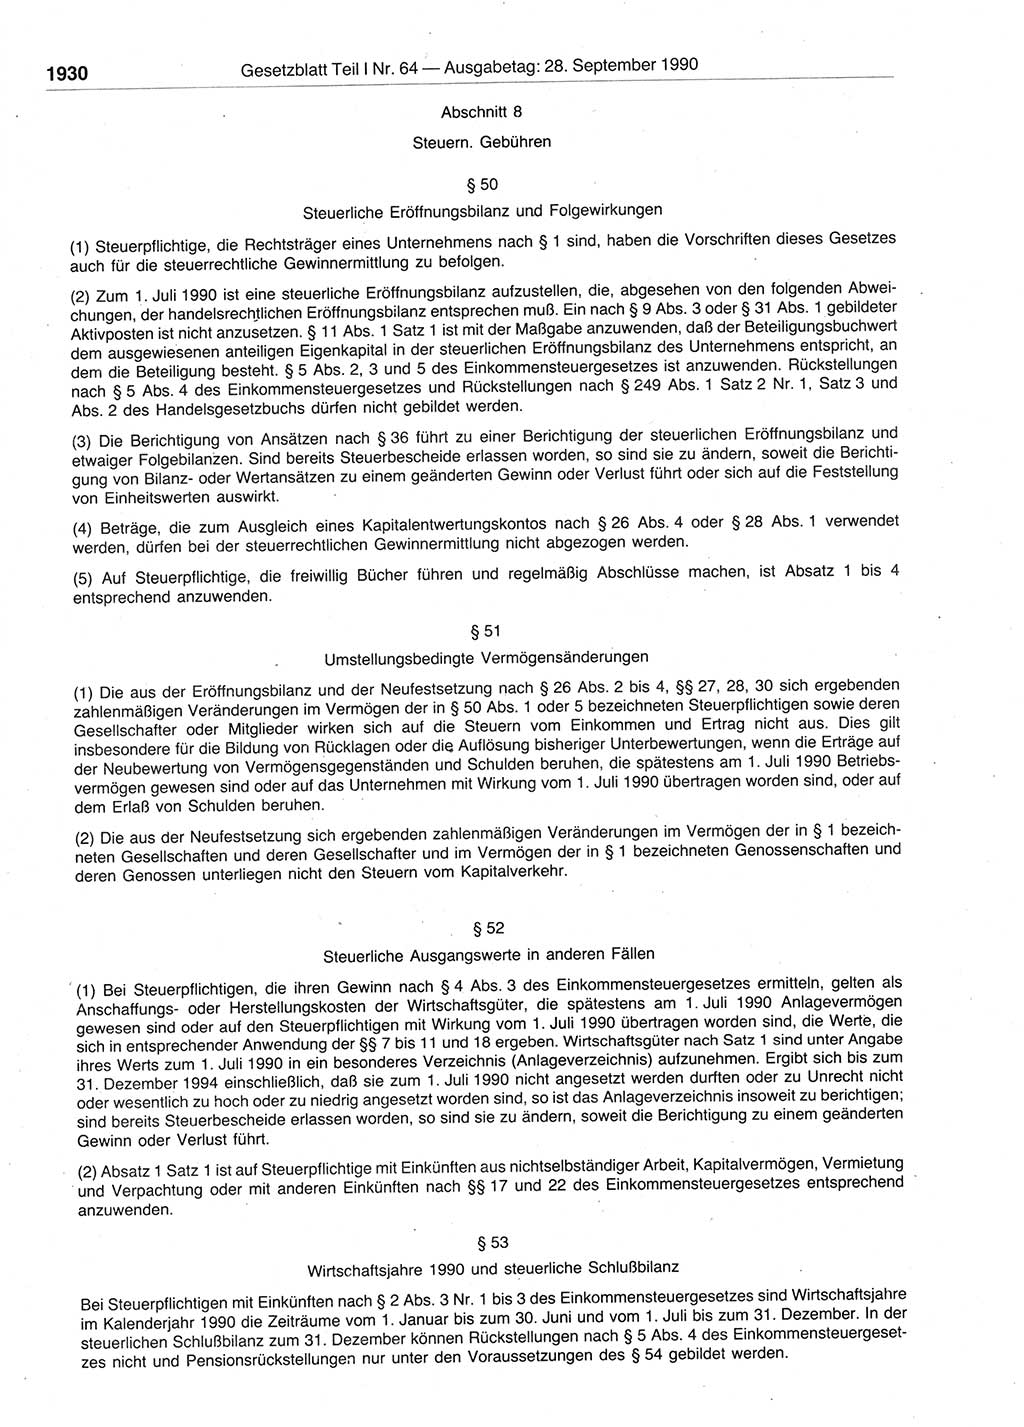 Gesetzblatt (GBl.) der Deutschen Demokratischen Republik (DDR) Teil Ⅰ 1990, Seite 1930 (GBl. DDR Ⅰ 1990, S. 1930)